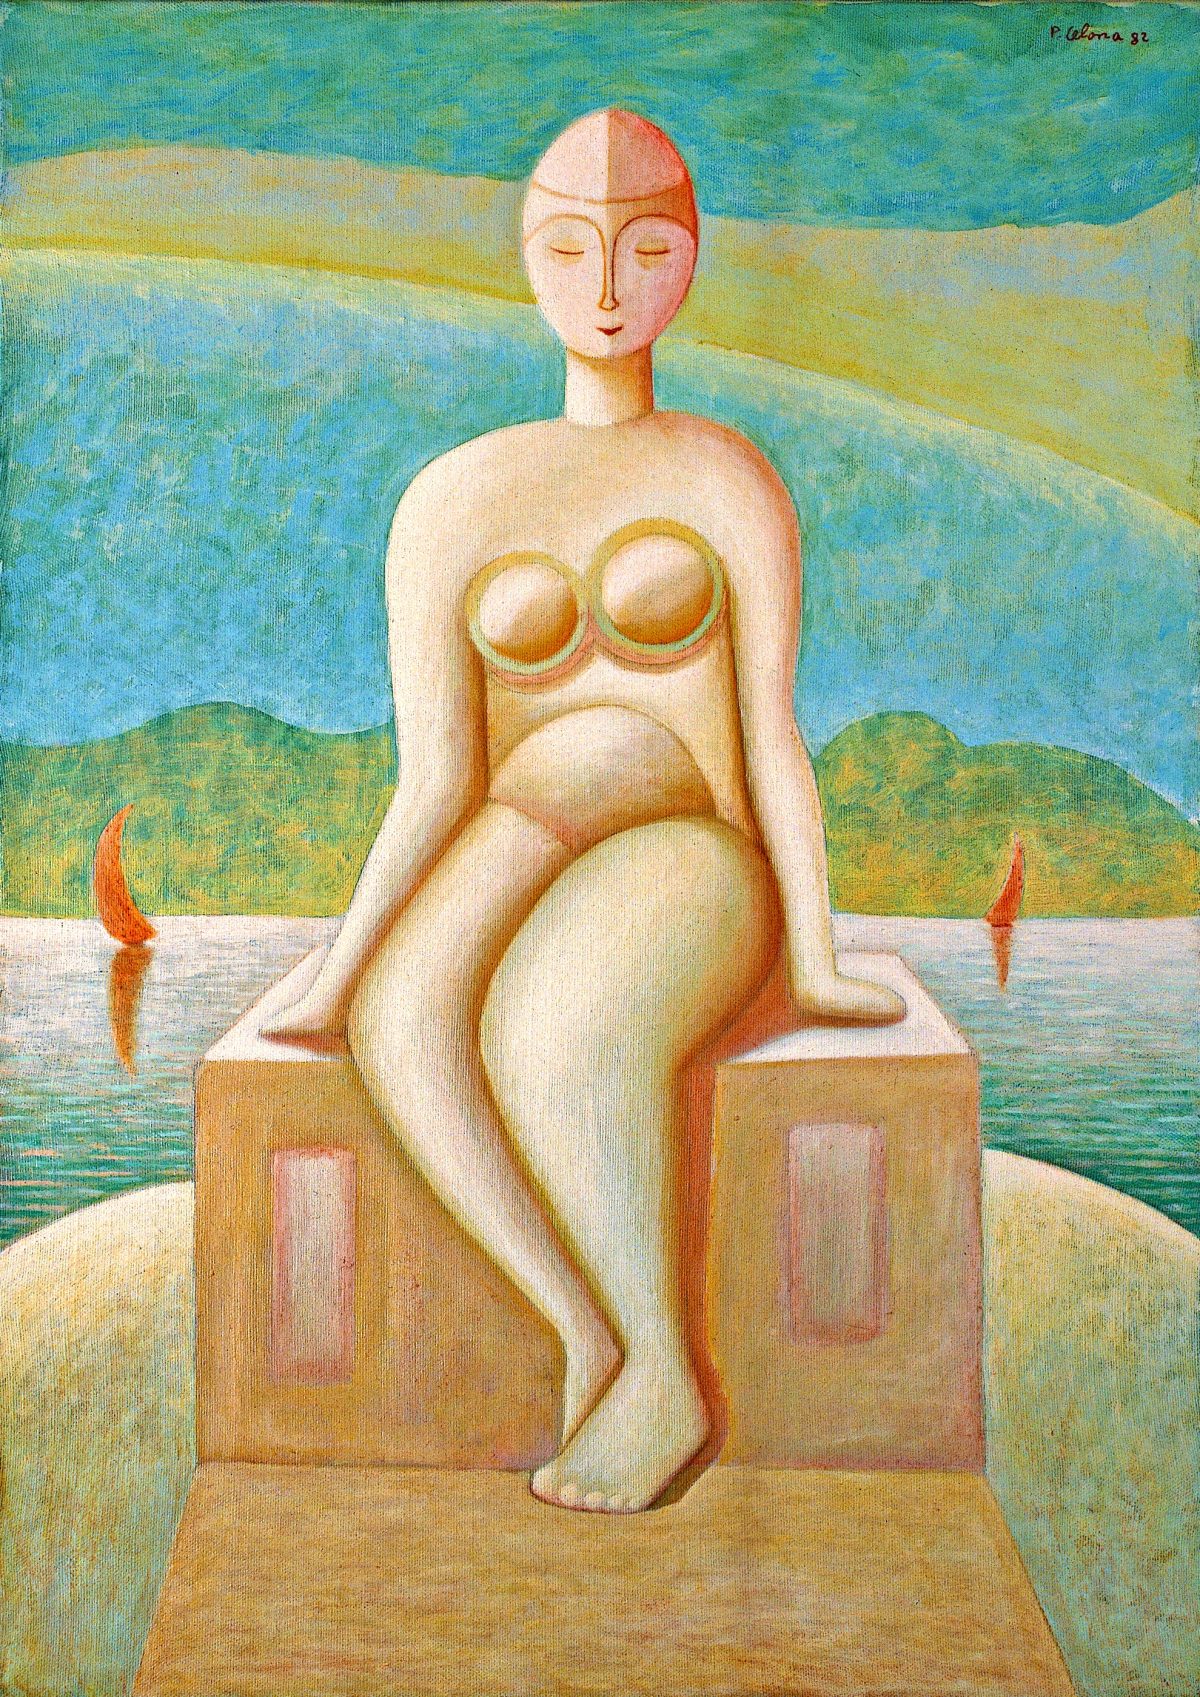 Sibilla, 1982
Olio su tela
70 x 50 cm,
FV014